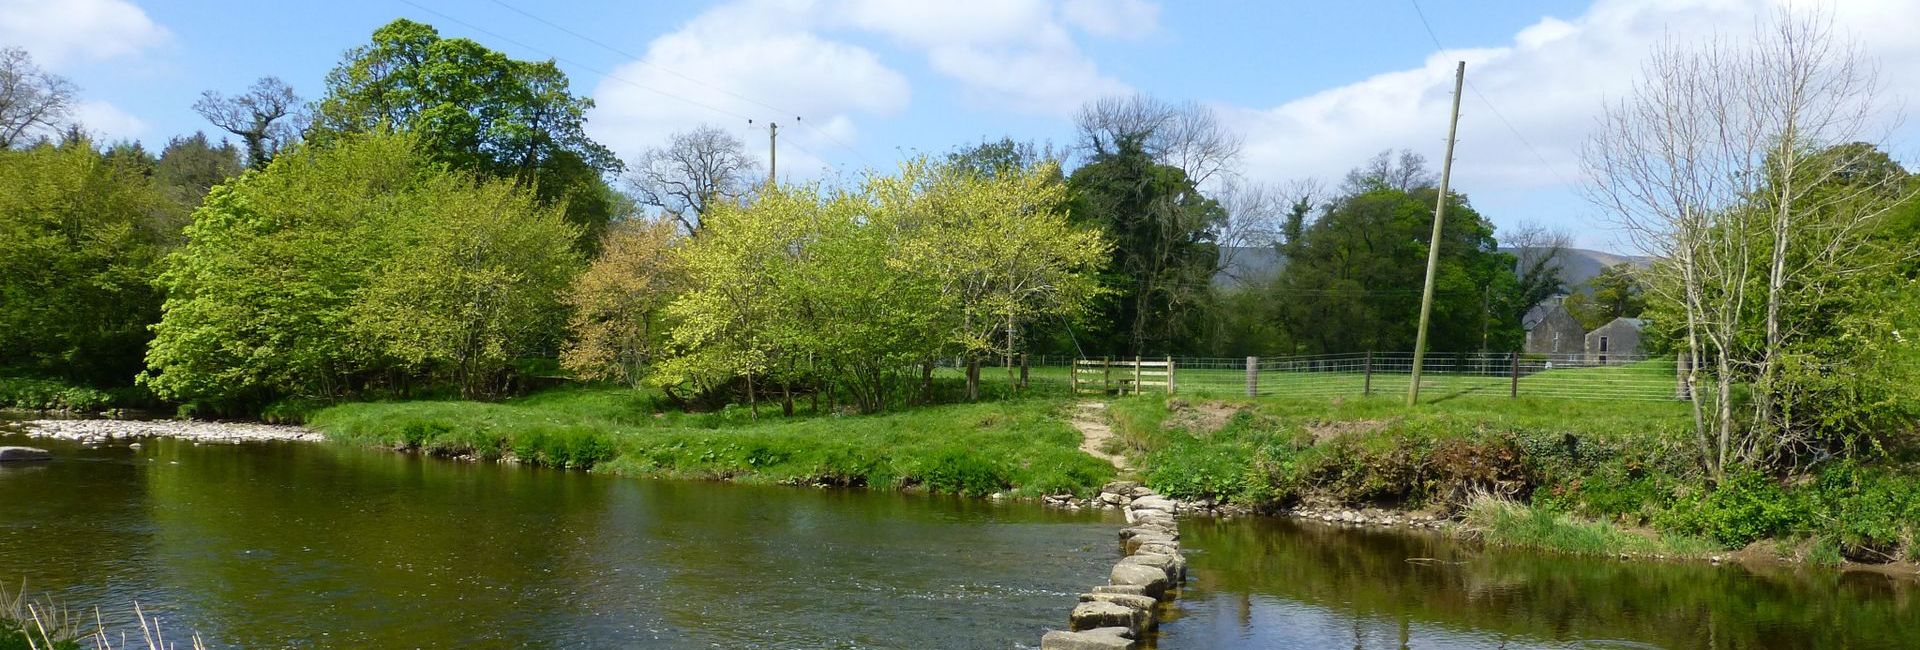 River Hodder near the Inn at Whitewell